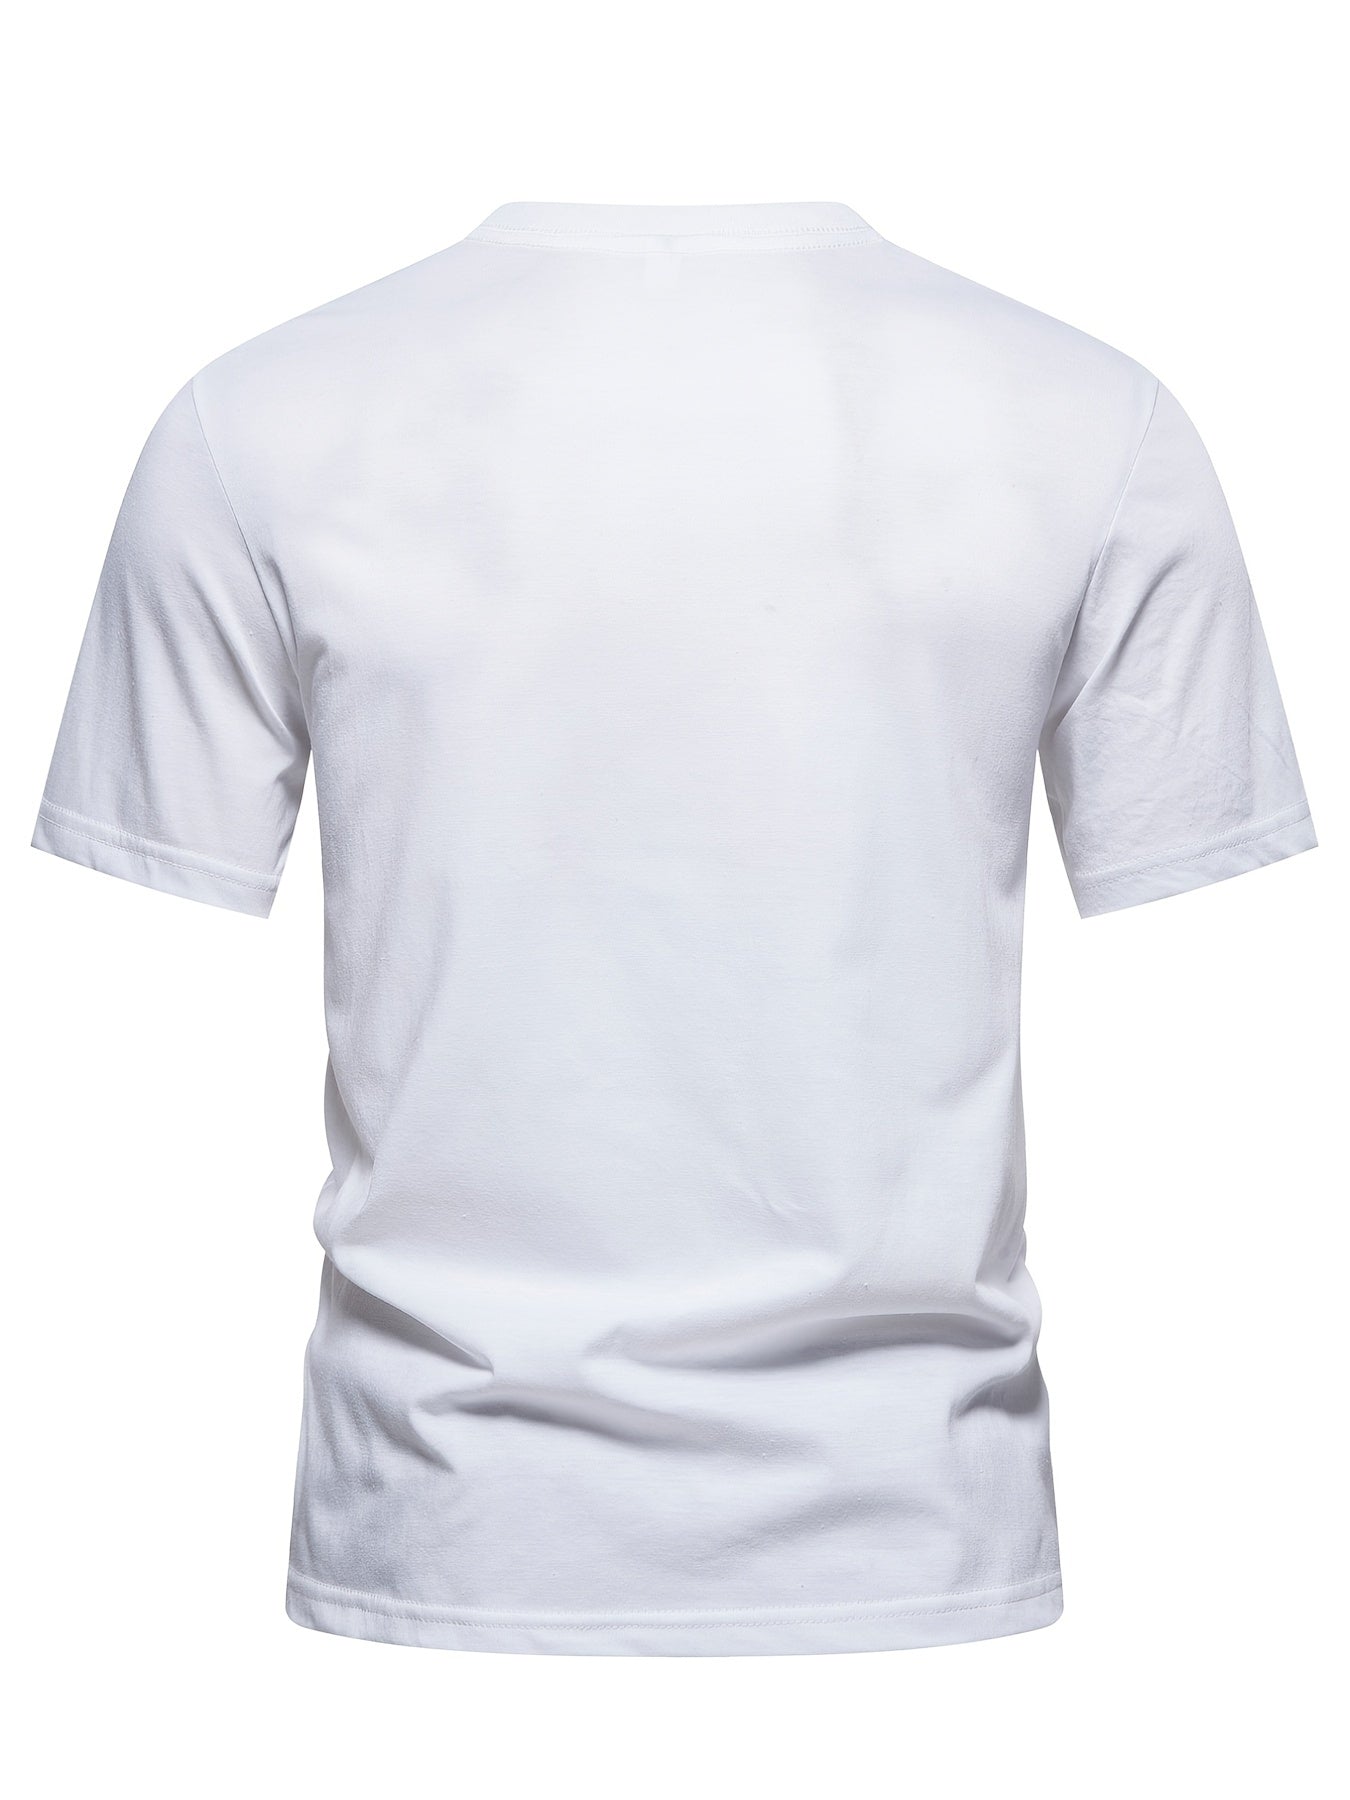 Men's Casual Summer Cotton T-shirt